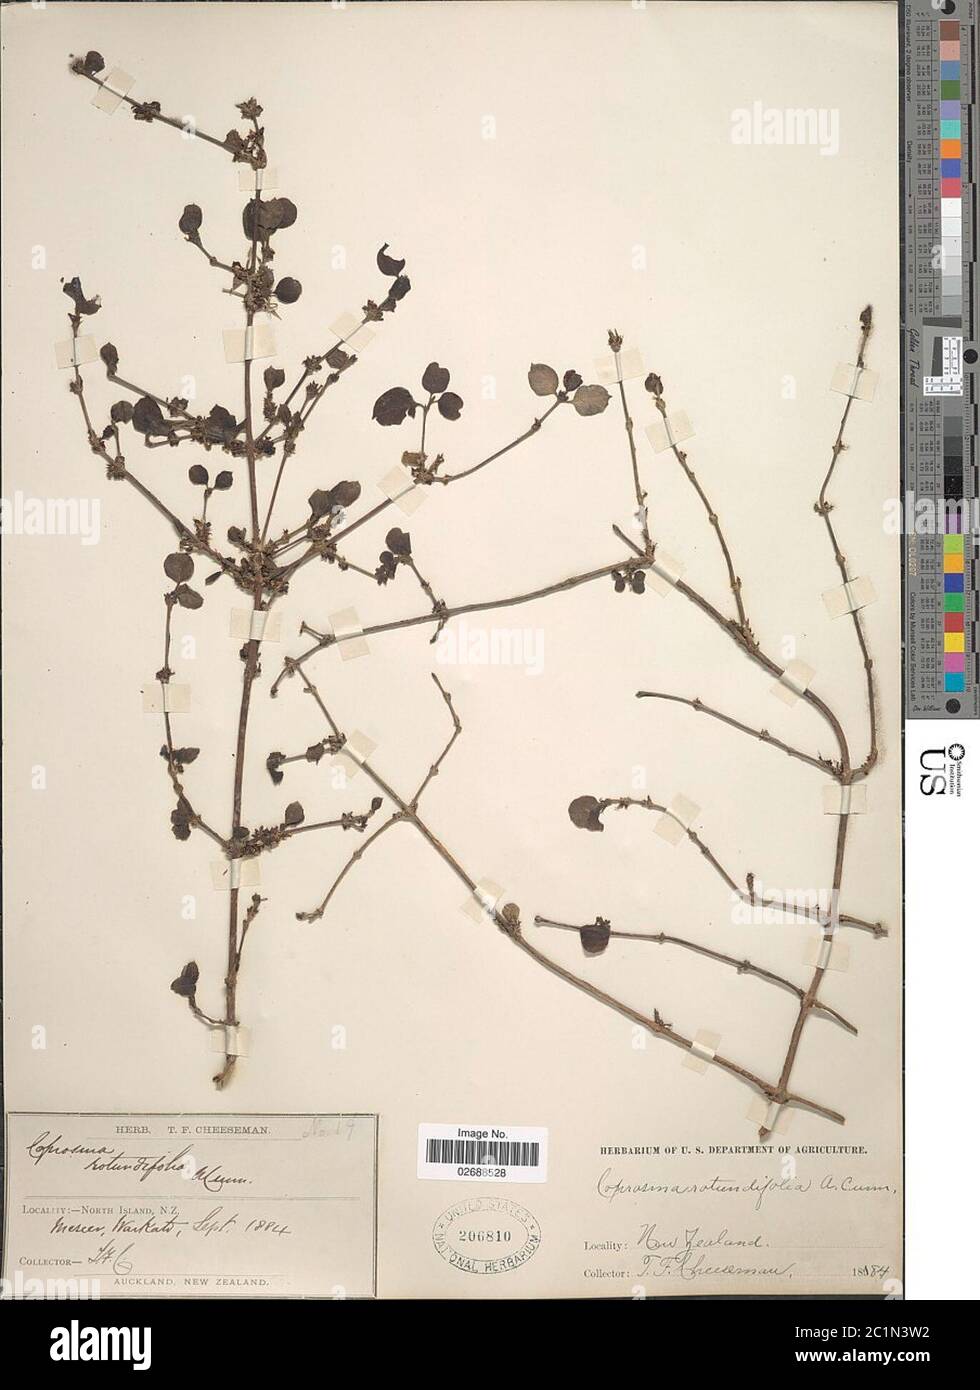 Coprosma rotundifolia Coprosma rotundifolia. Stock Photo